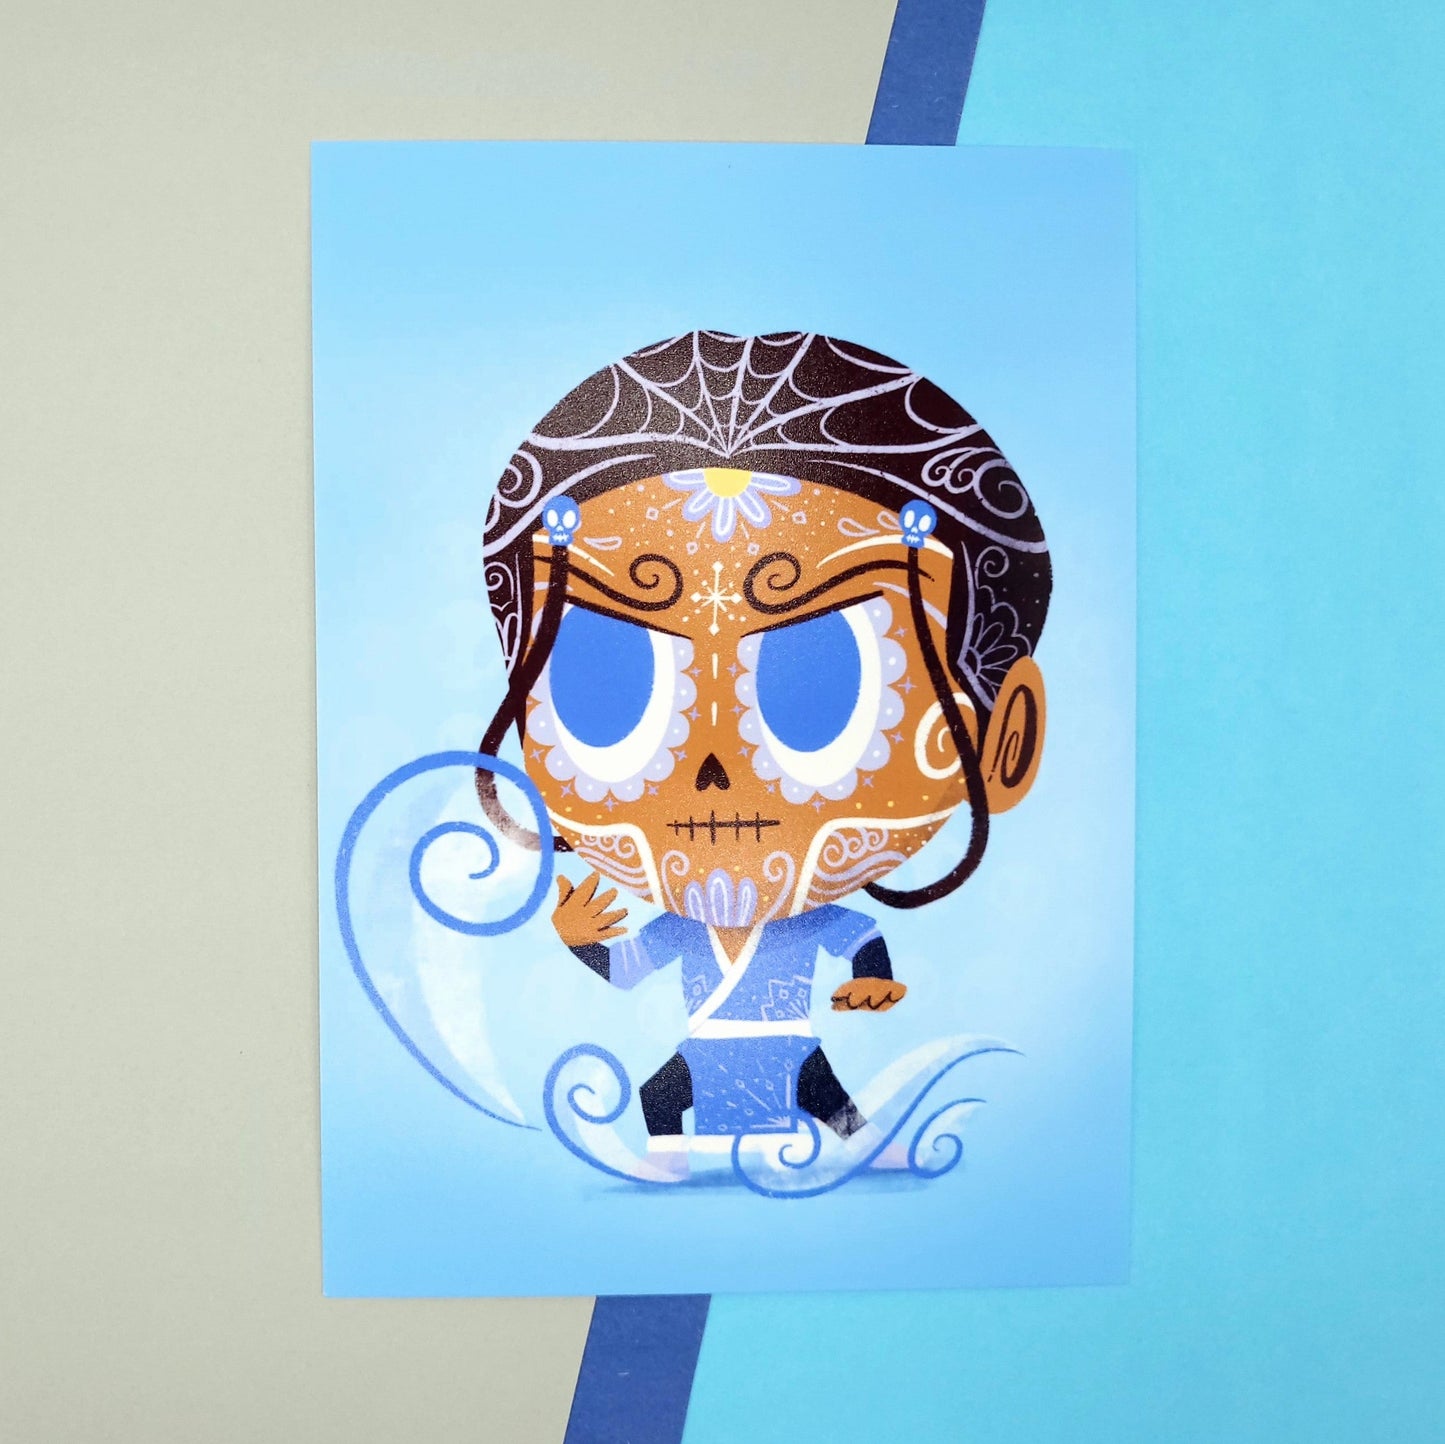 kataara avtar the last airbender sugar skull inspired print gift